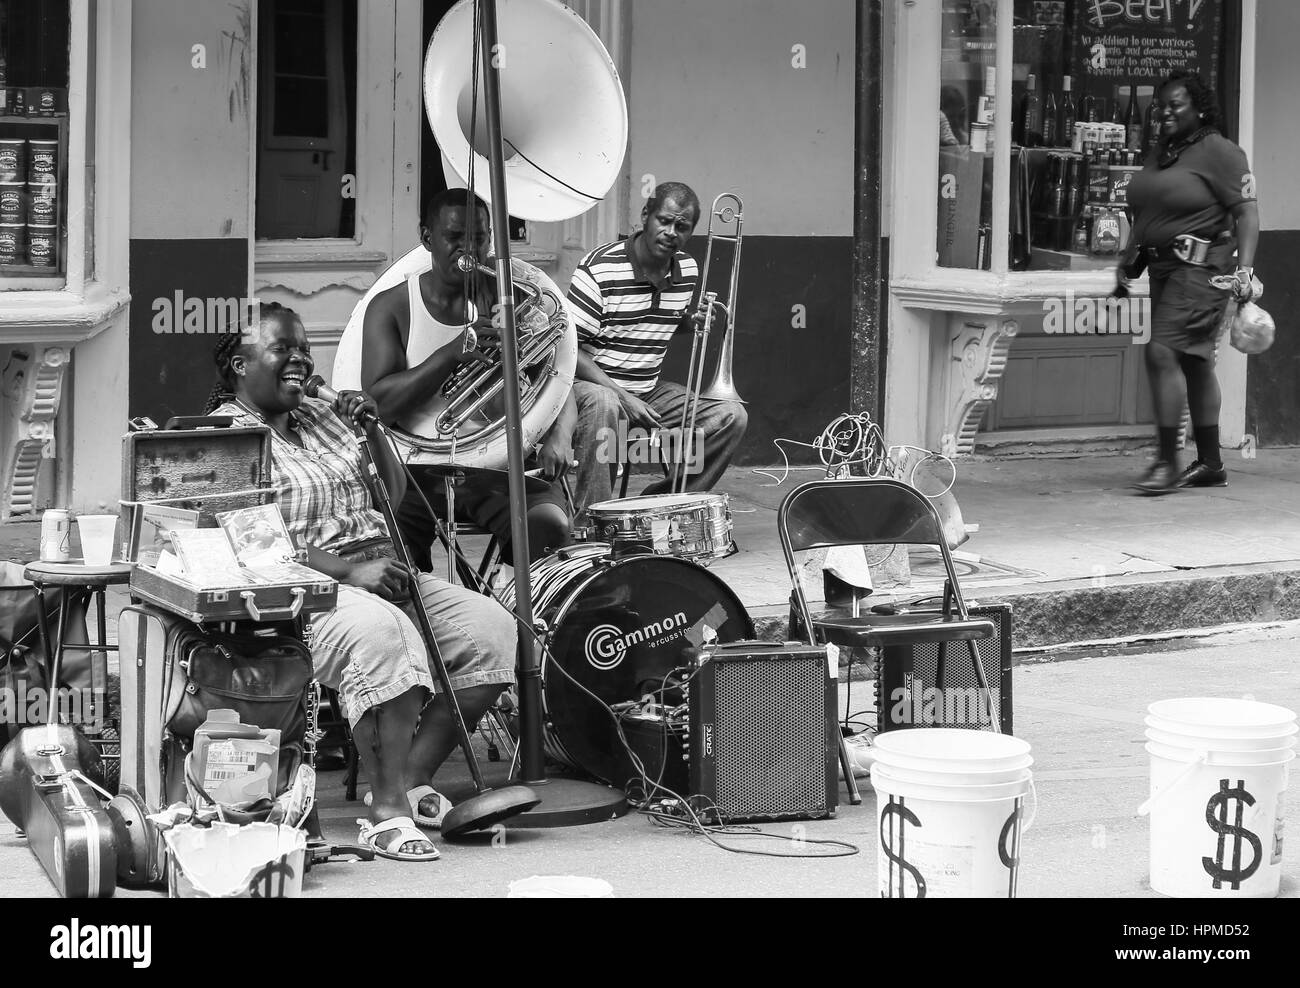 New Orleans, USA - 14. Mai 2015: Band spielt live-Musik am Royal Street im French Quarter. Das Bild ist schwarz-weiß. Stockfoto